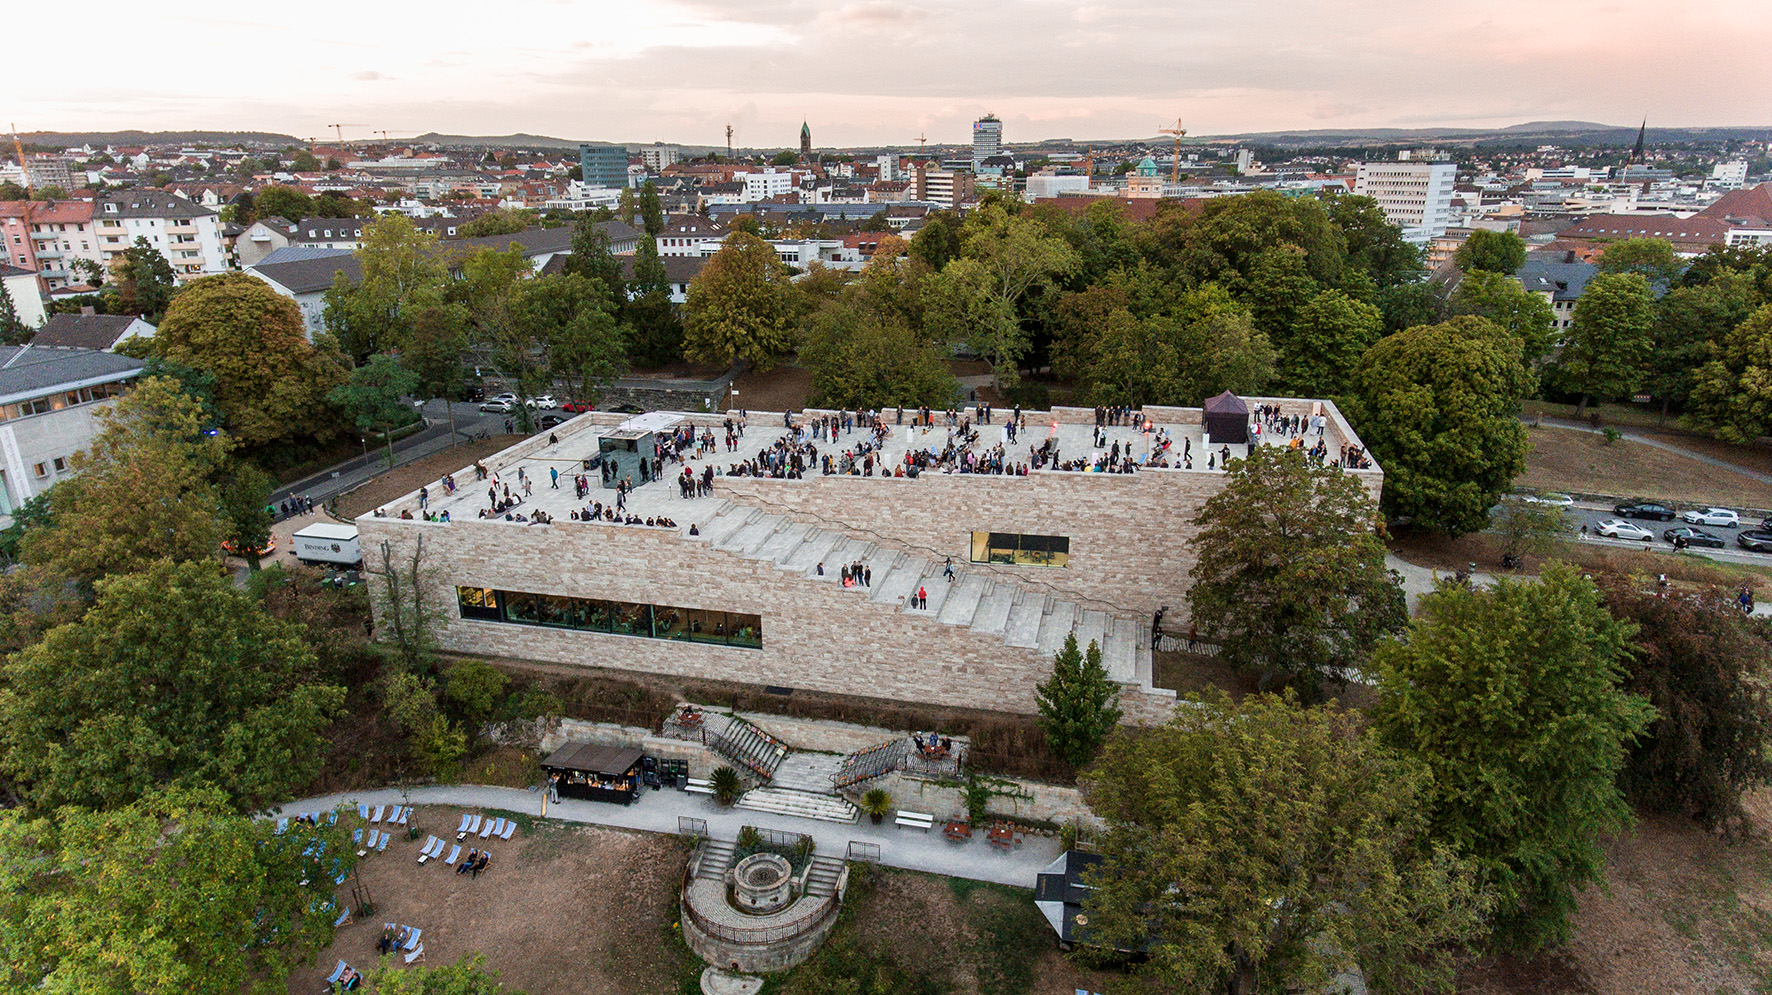 Das Foto zeigt den modernen Bau der Grimmwelt aus der Vogelperspektive. Auf dem Dach das Gebäudes, welches durch breite Treppen erreichbar ist, befinden sich viele Menschen. Um das Gebäude viele Bäume und am Horizont die Skyline von Kassel.